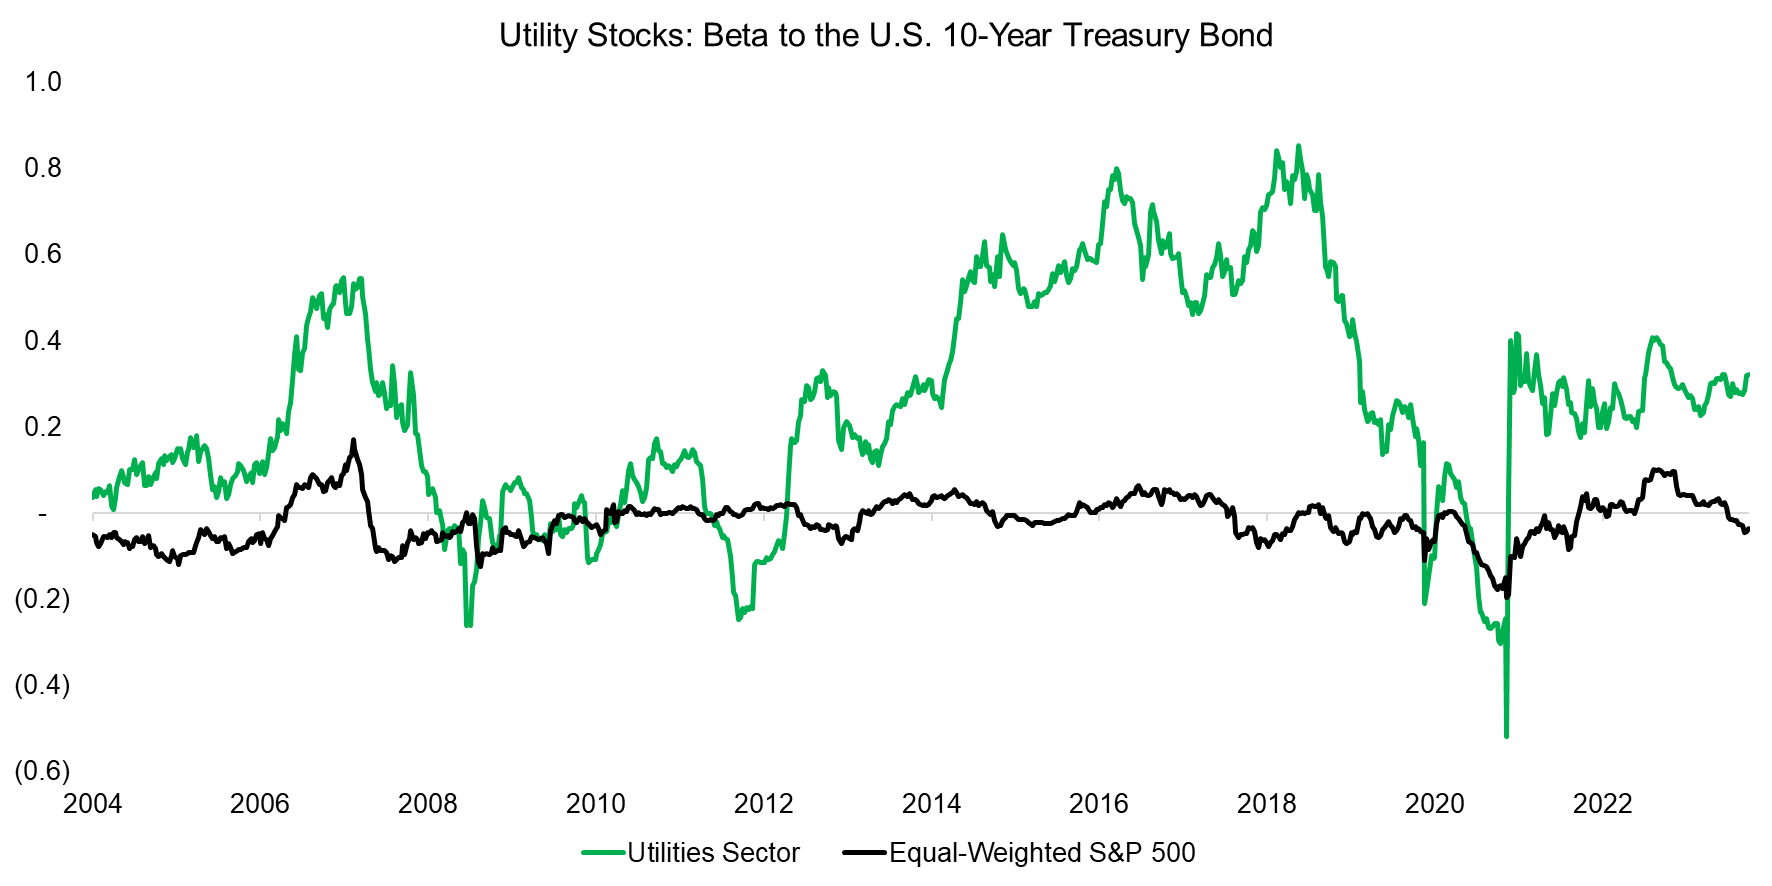 Utility Stocks Beta to the U.S. 10-Year Treasury Bond